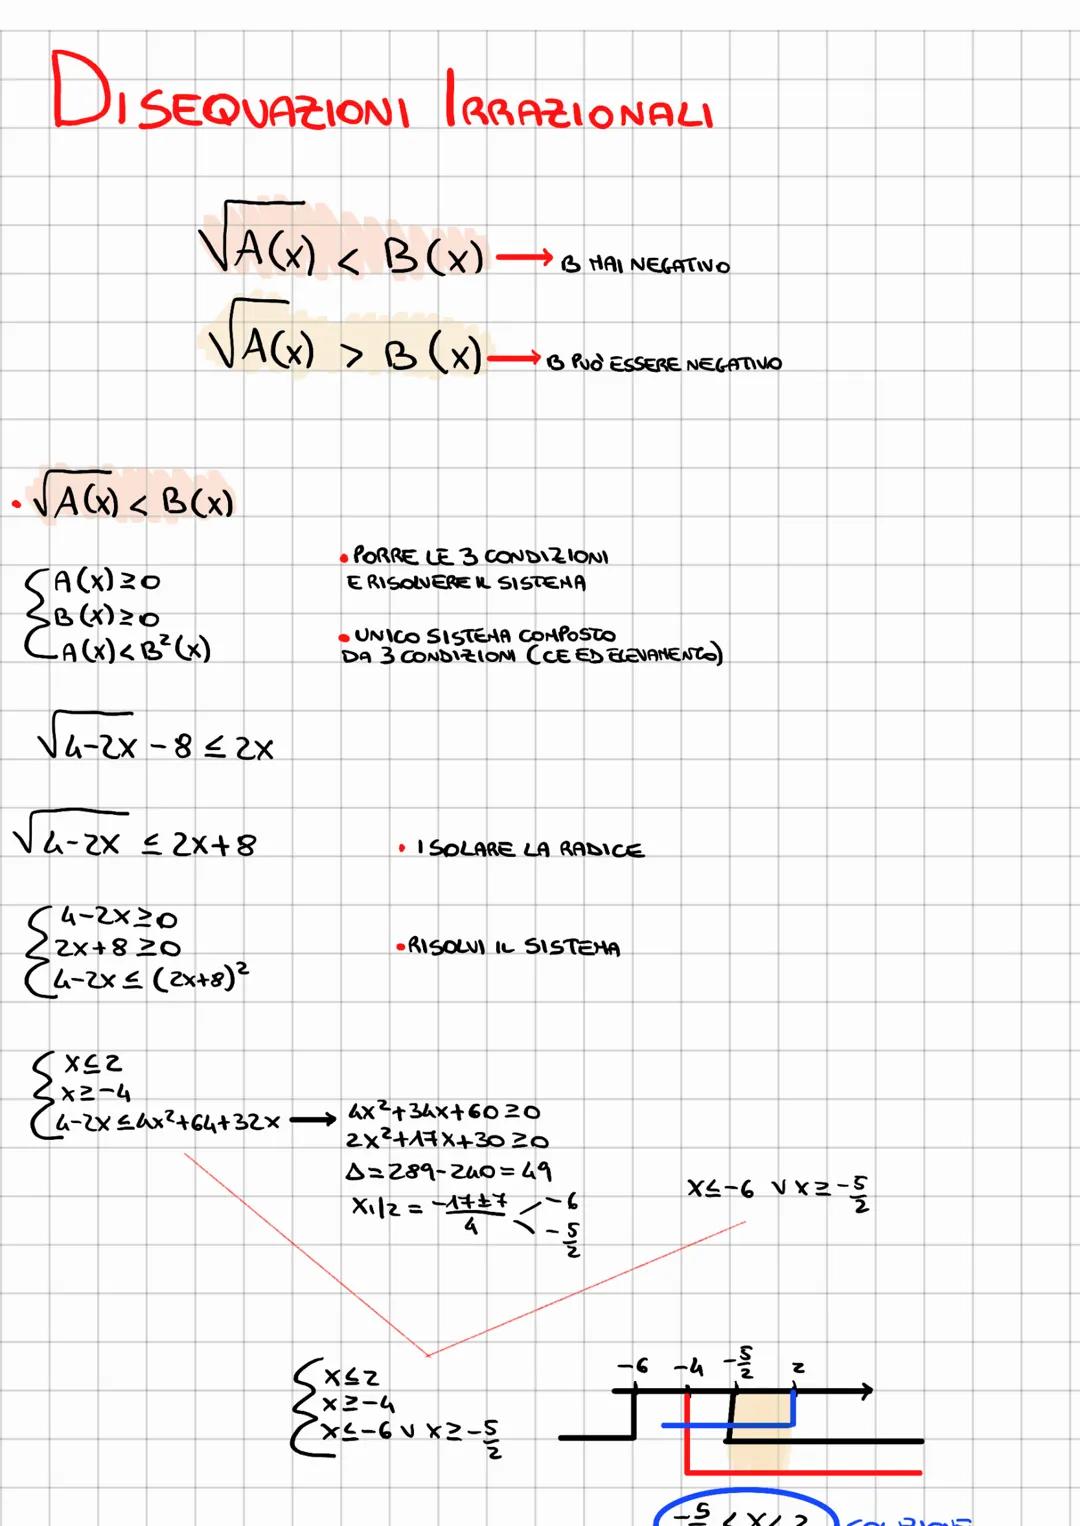 DISEQUAZIONI IRRAZIONALI
√A(X) <B(x)→→→→BHAI NEGATIVO
VAGO)
√A(x) < B (x)
SA(X) 20
B (X) ²0
CA(x) <B² (x)
√4-2X-8≤ 2x
√4-2x ≤2x+8
4-2×30
2x+